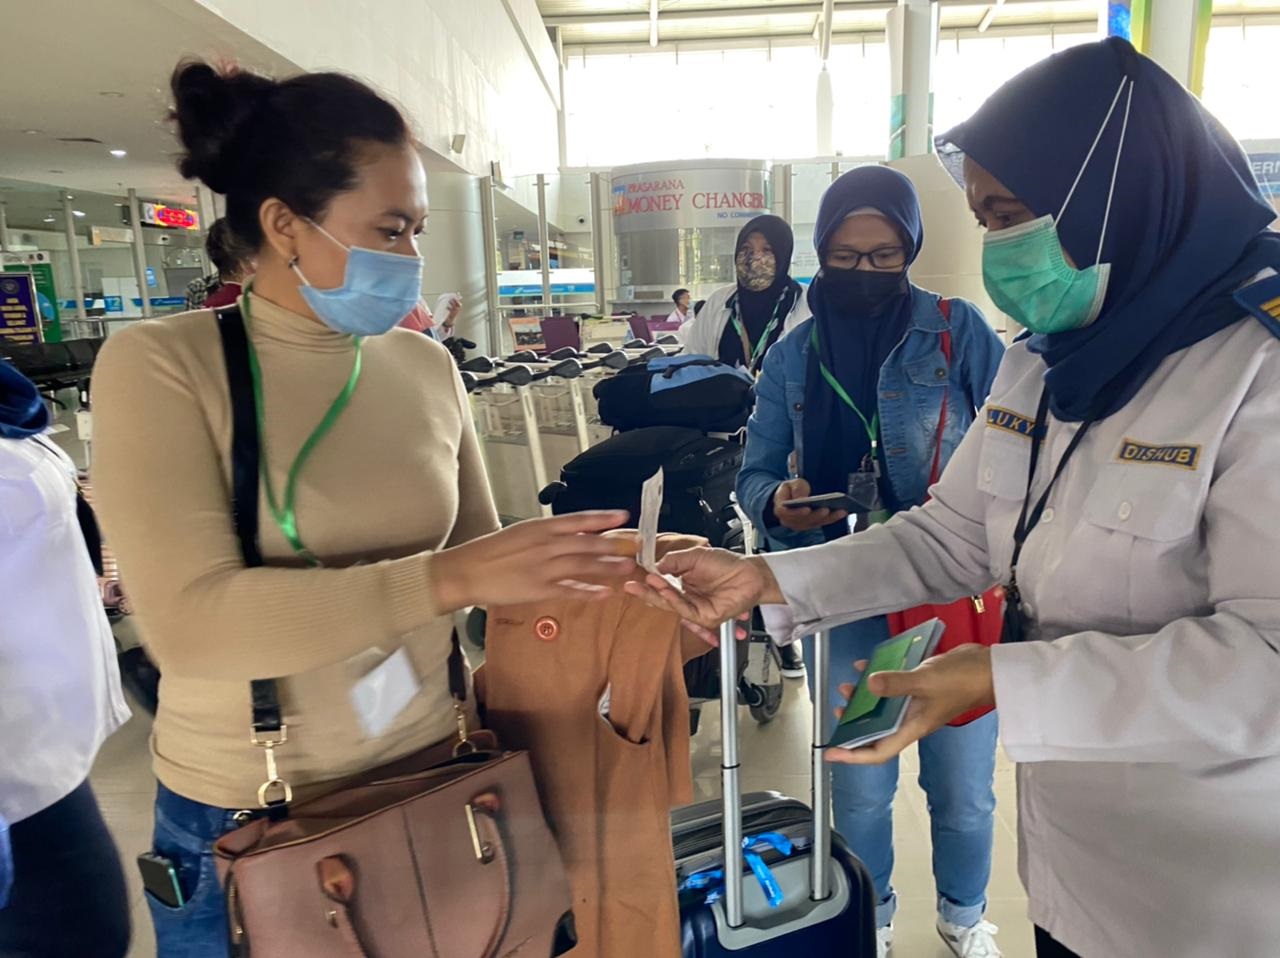 Petugas Dishub Jatim saat mendata para pekerja migran yang tiba di Bandara Juanda , Selasa 4 April 2021 (Foto / Reno Reksa / Metro TV)